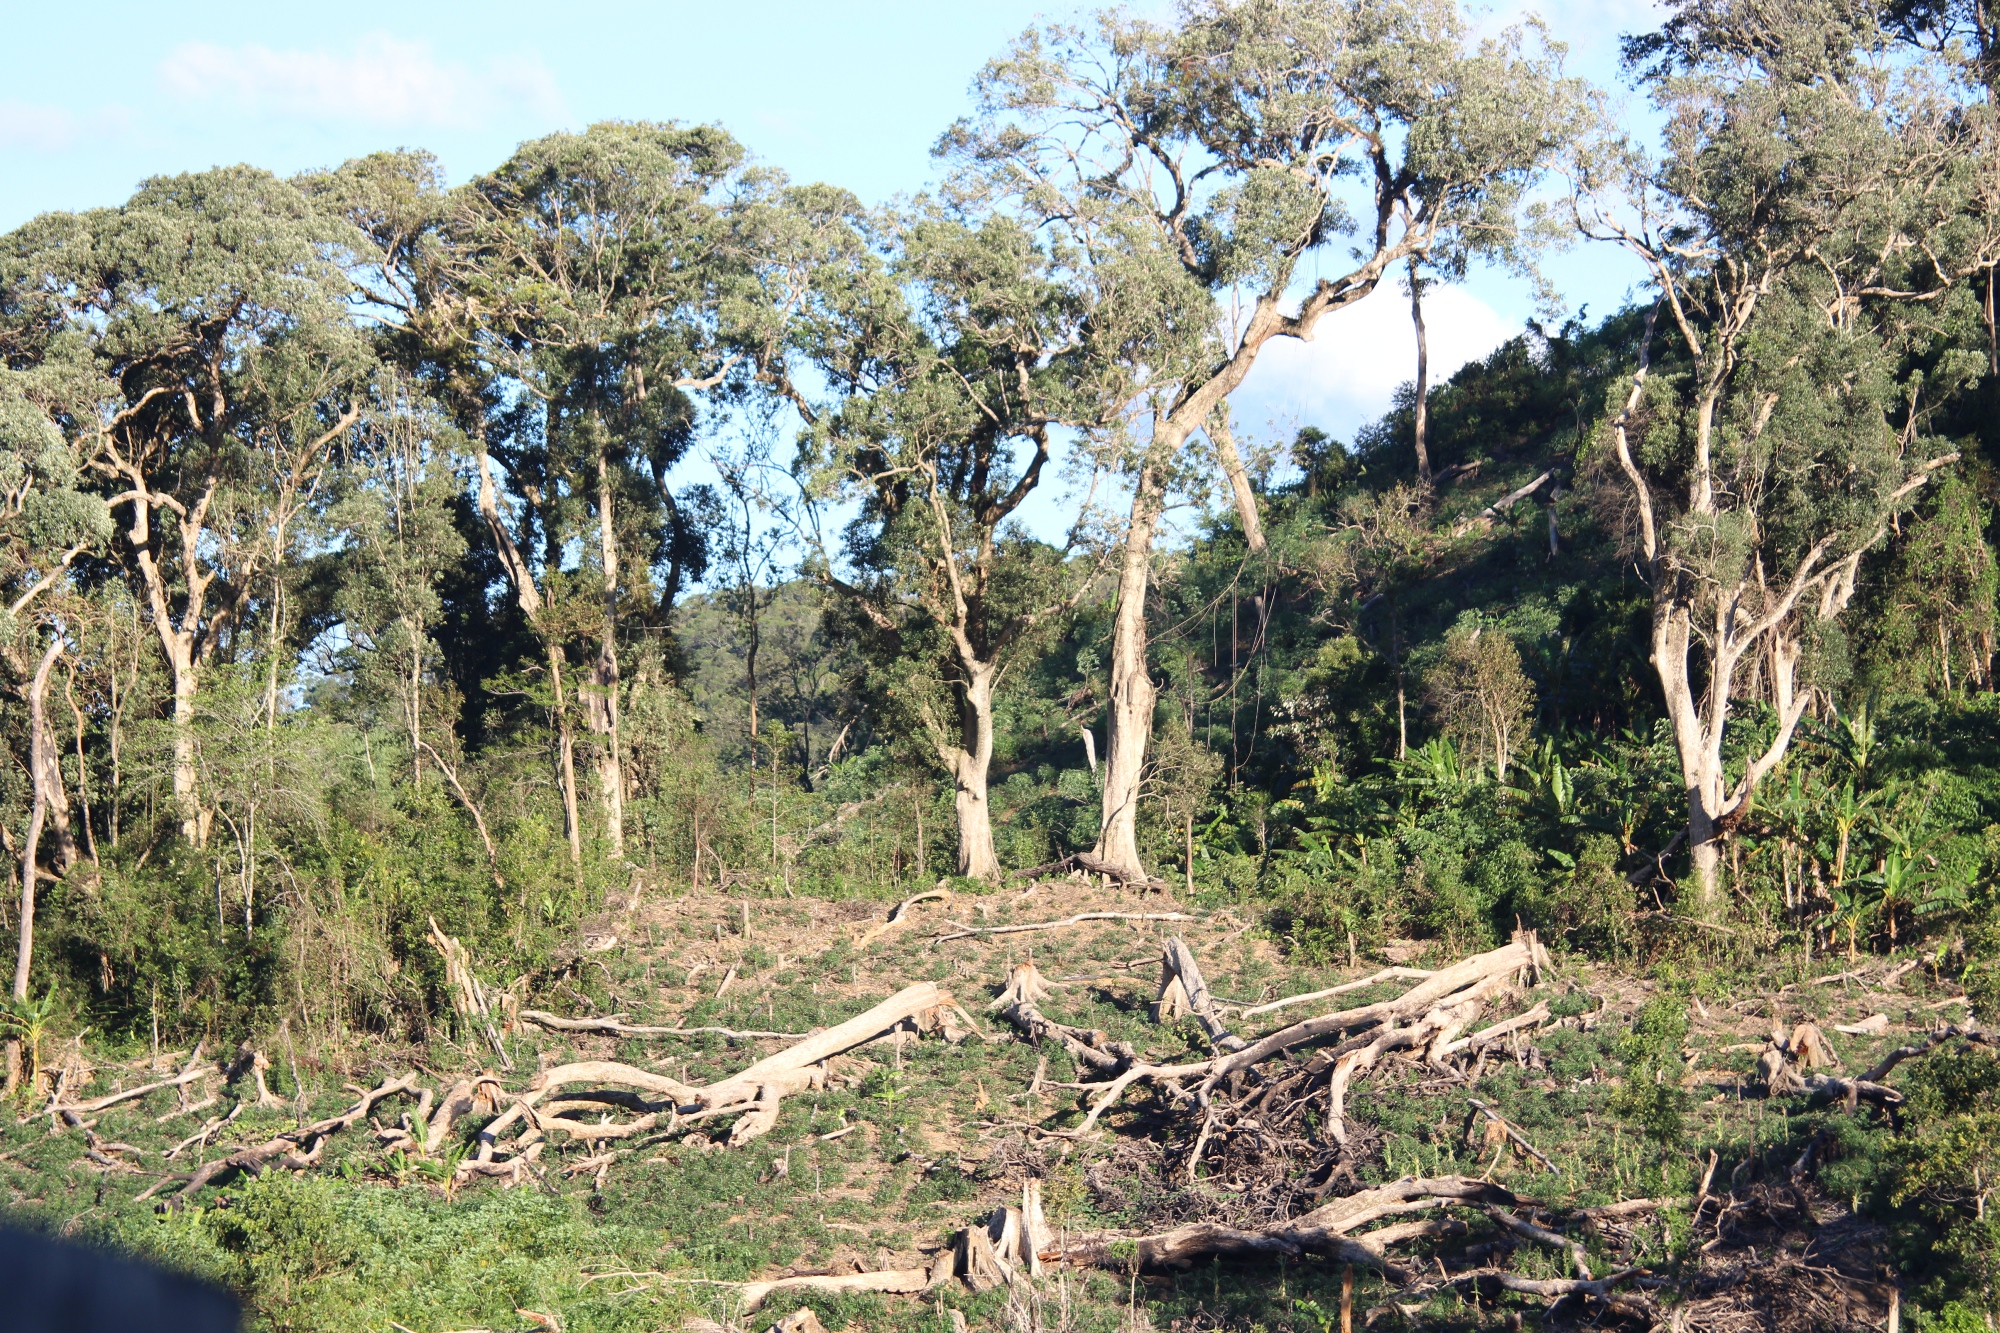 Mặc dù đã nhận tiền chính sách chi trả dịch vụ môi trường rừng, nhưng thay vì bảo vệ, chính cộng đồng lại đi phá rừng, khai thác gỗ trái phép. (Ảnh: Vietnam+)